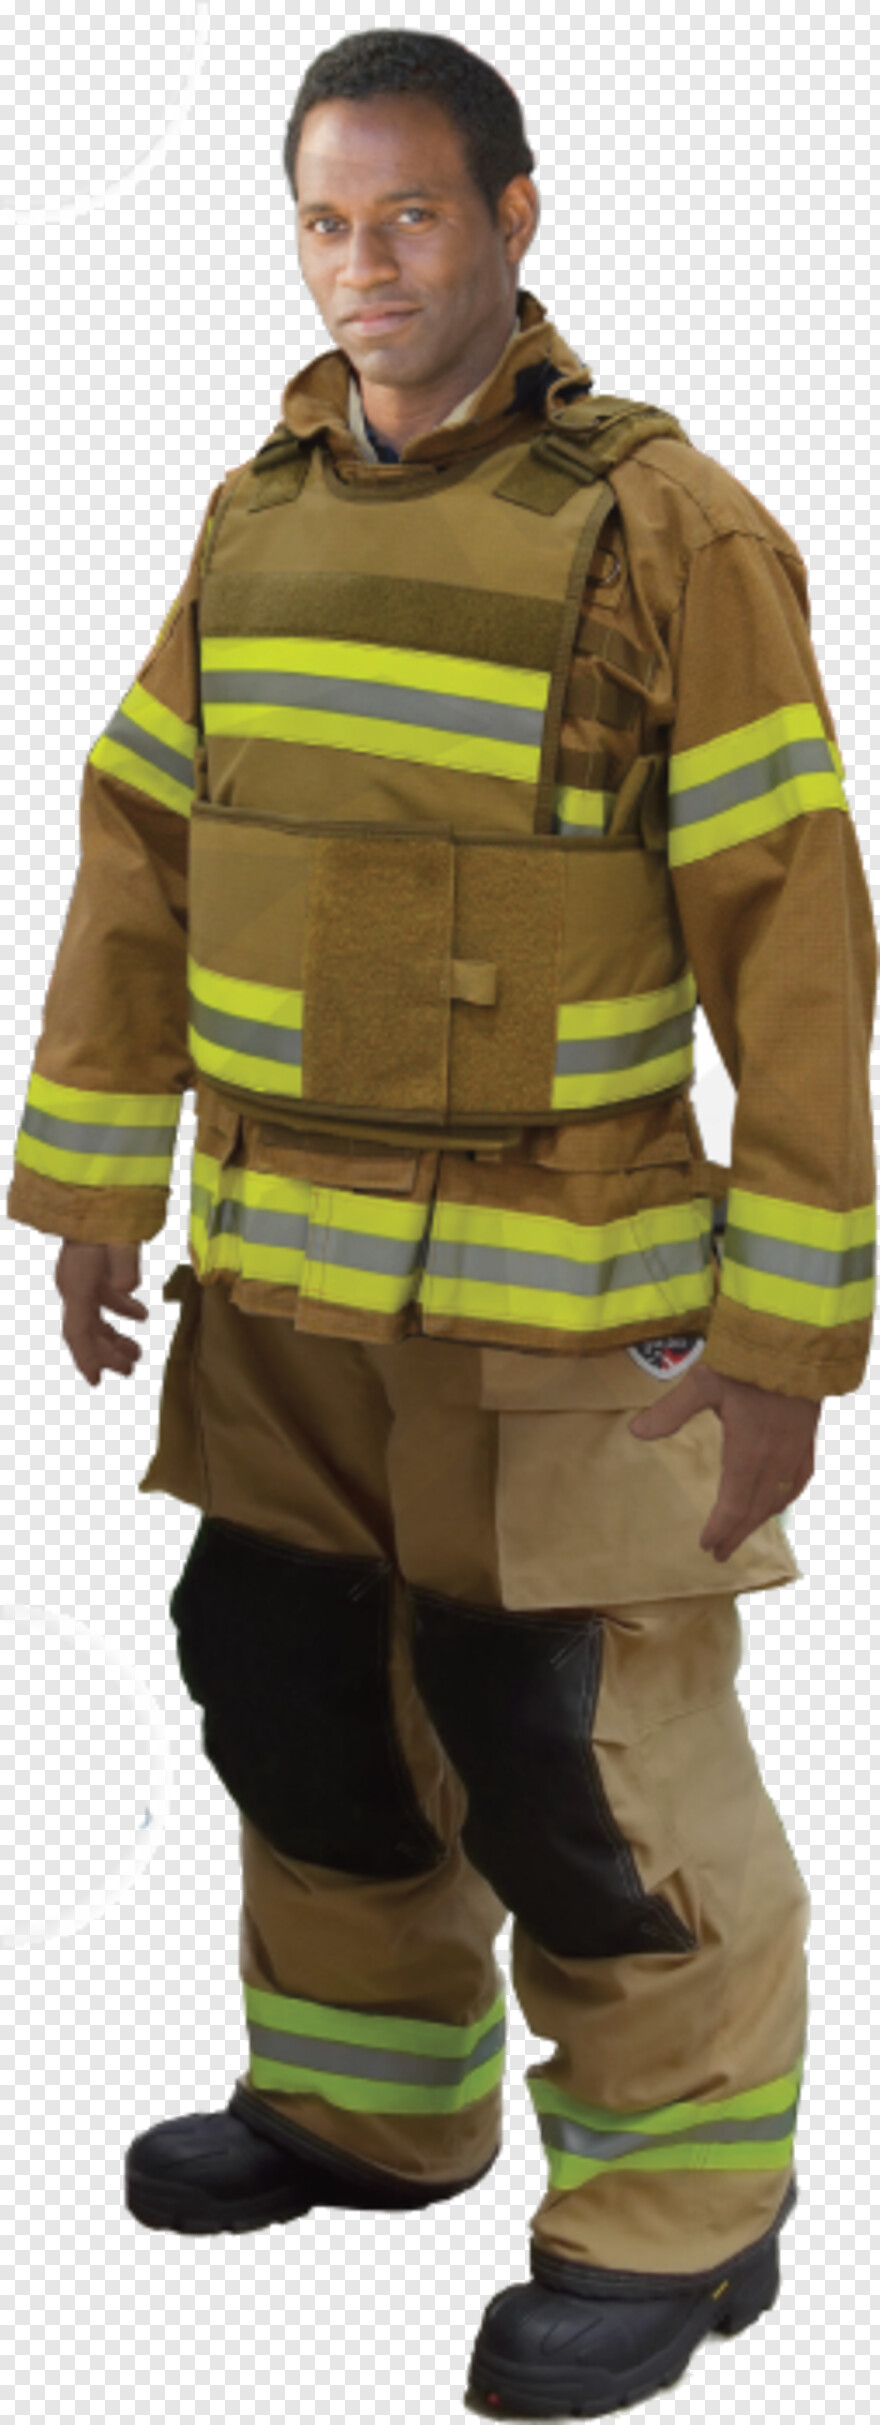 firefighter # 833463